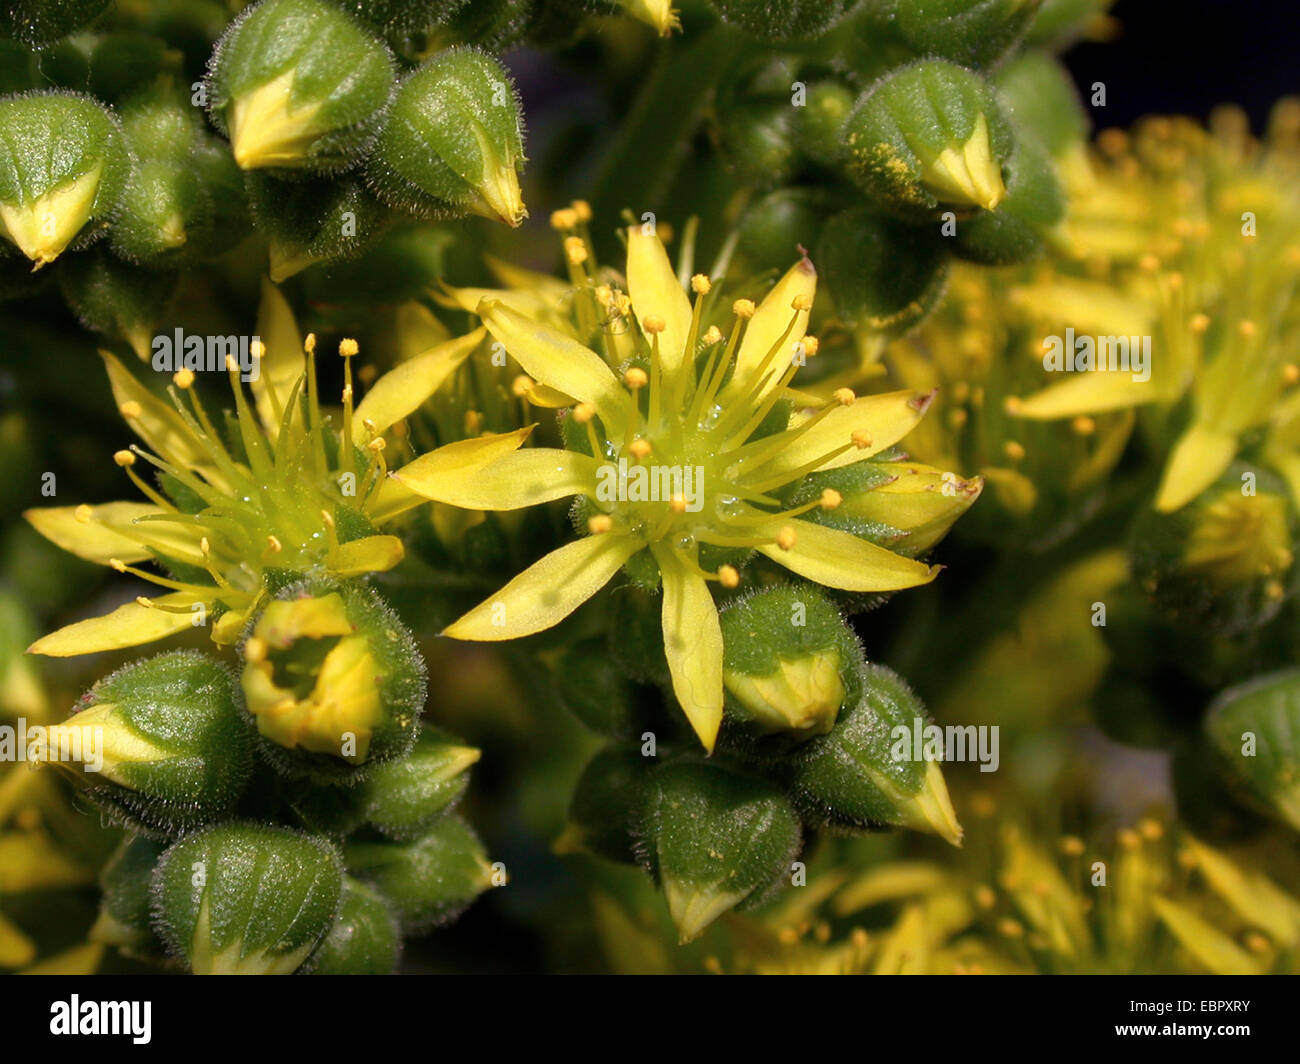 Aeonium (Aeonium cuneatum), blooming Stock Photo